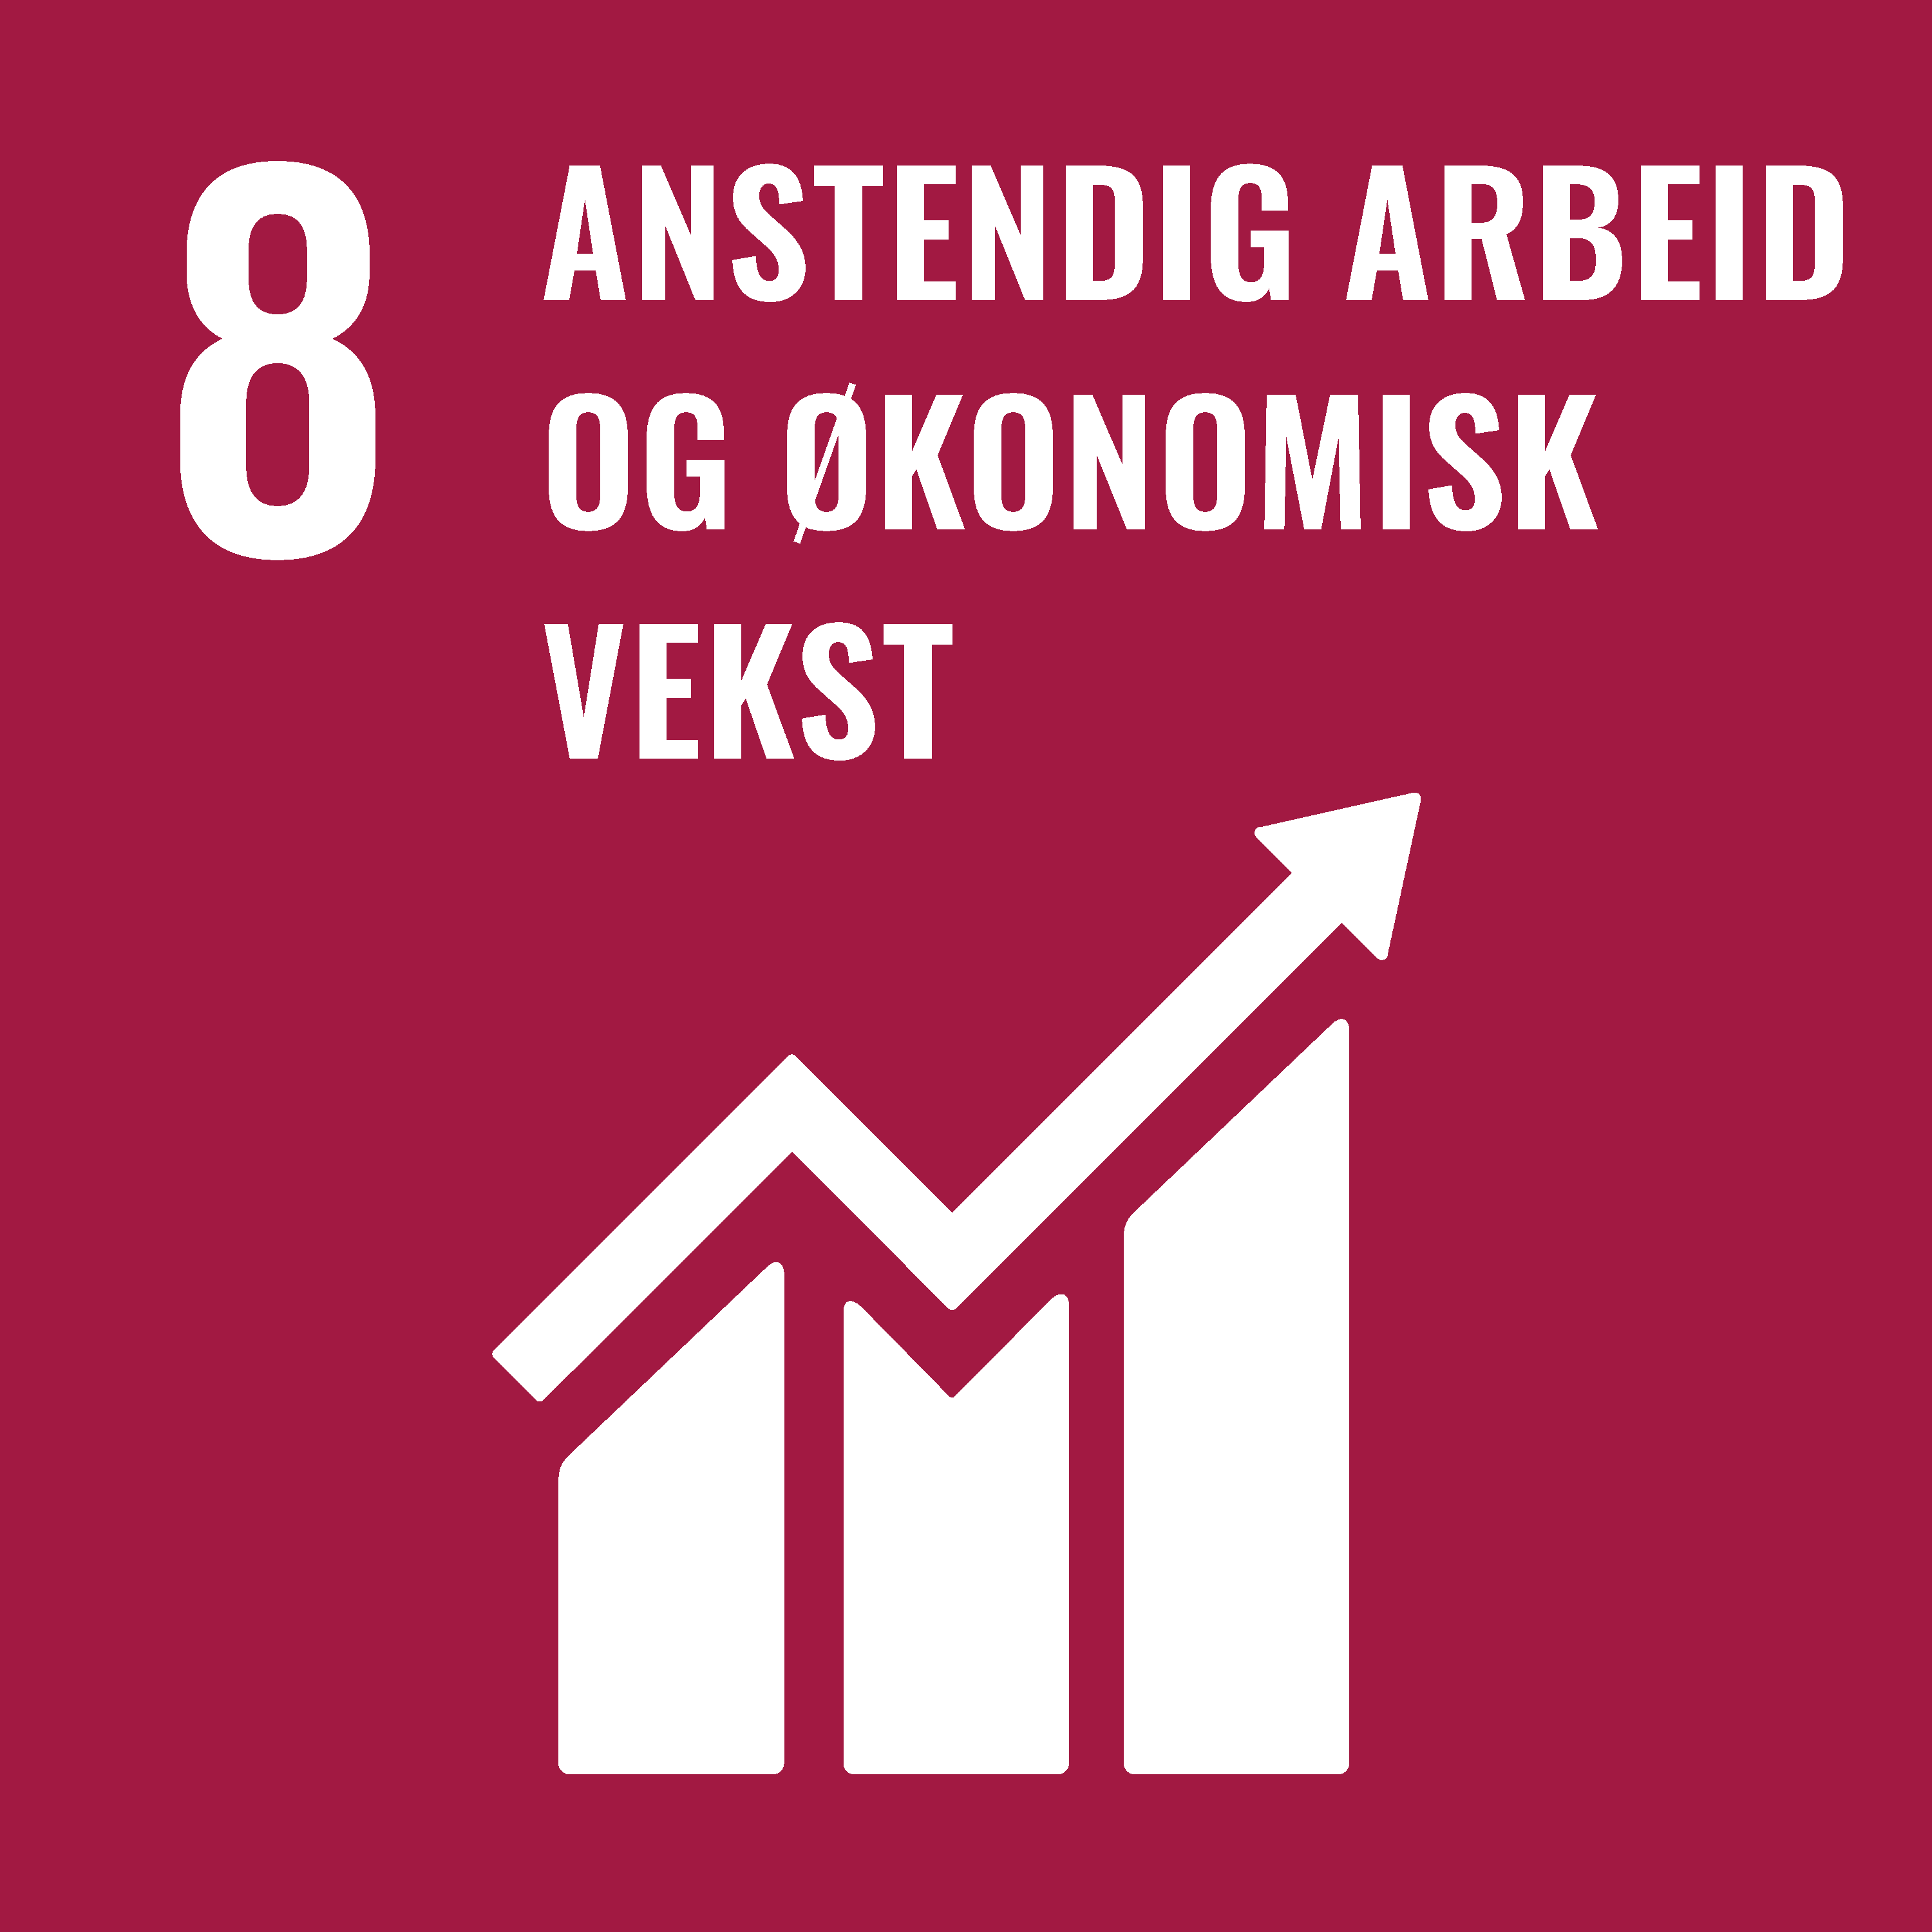 FNs bærekraftsmål nummer 8 er anstendig arbeid og økonomisk vekst